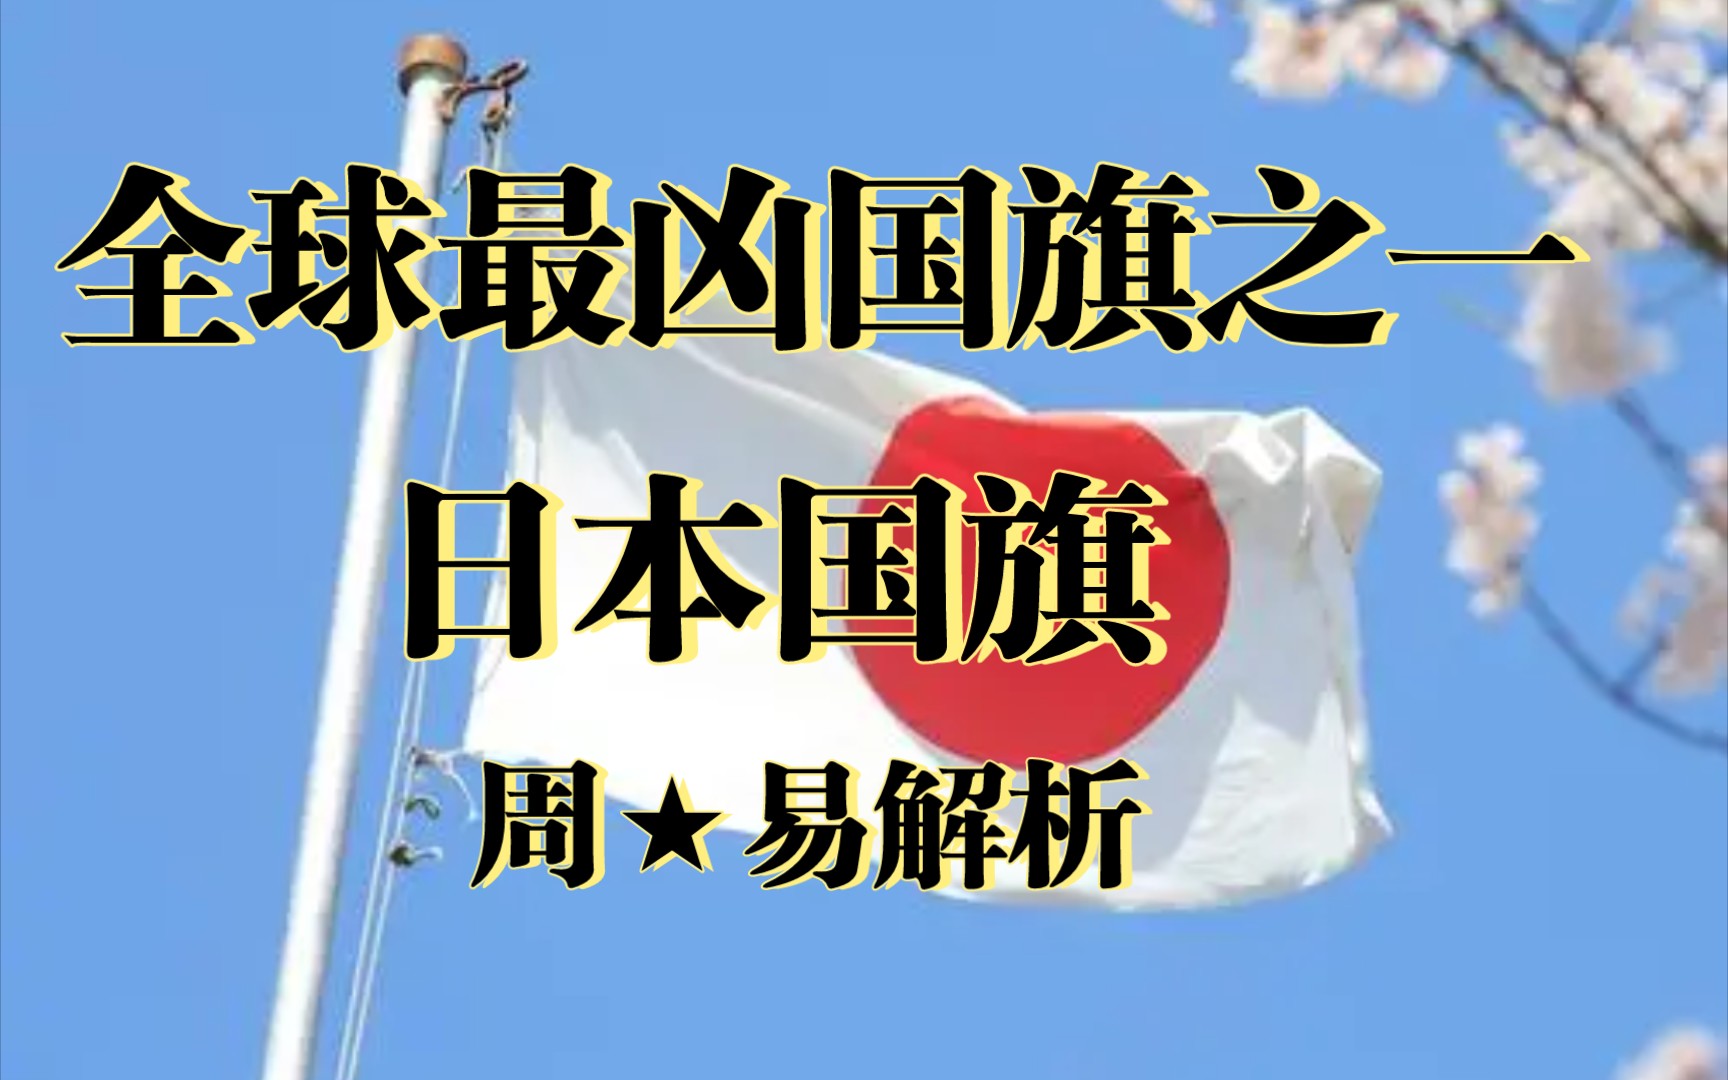 【全球最凶国旗之一】日本国旗解析